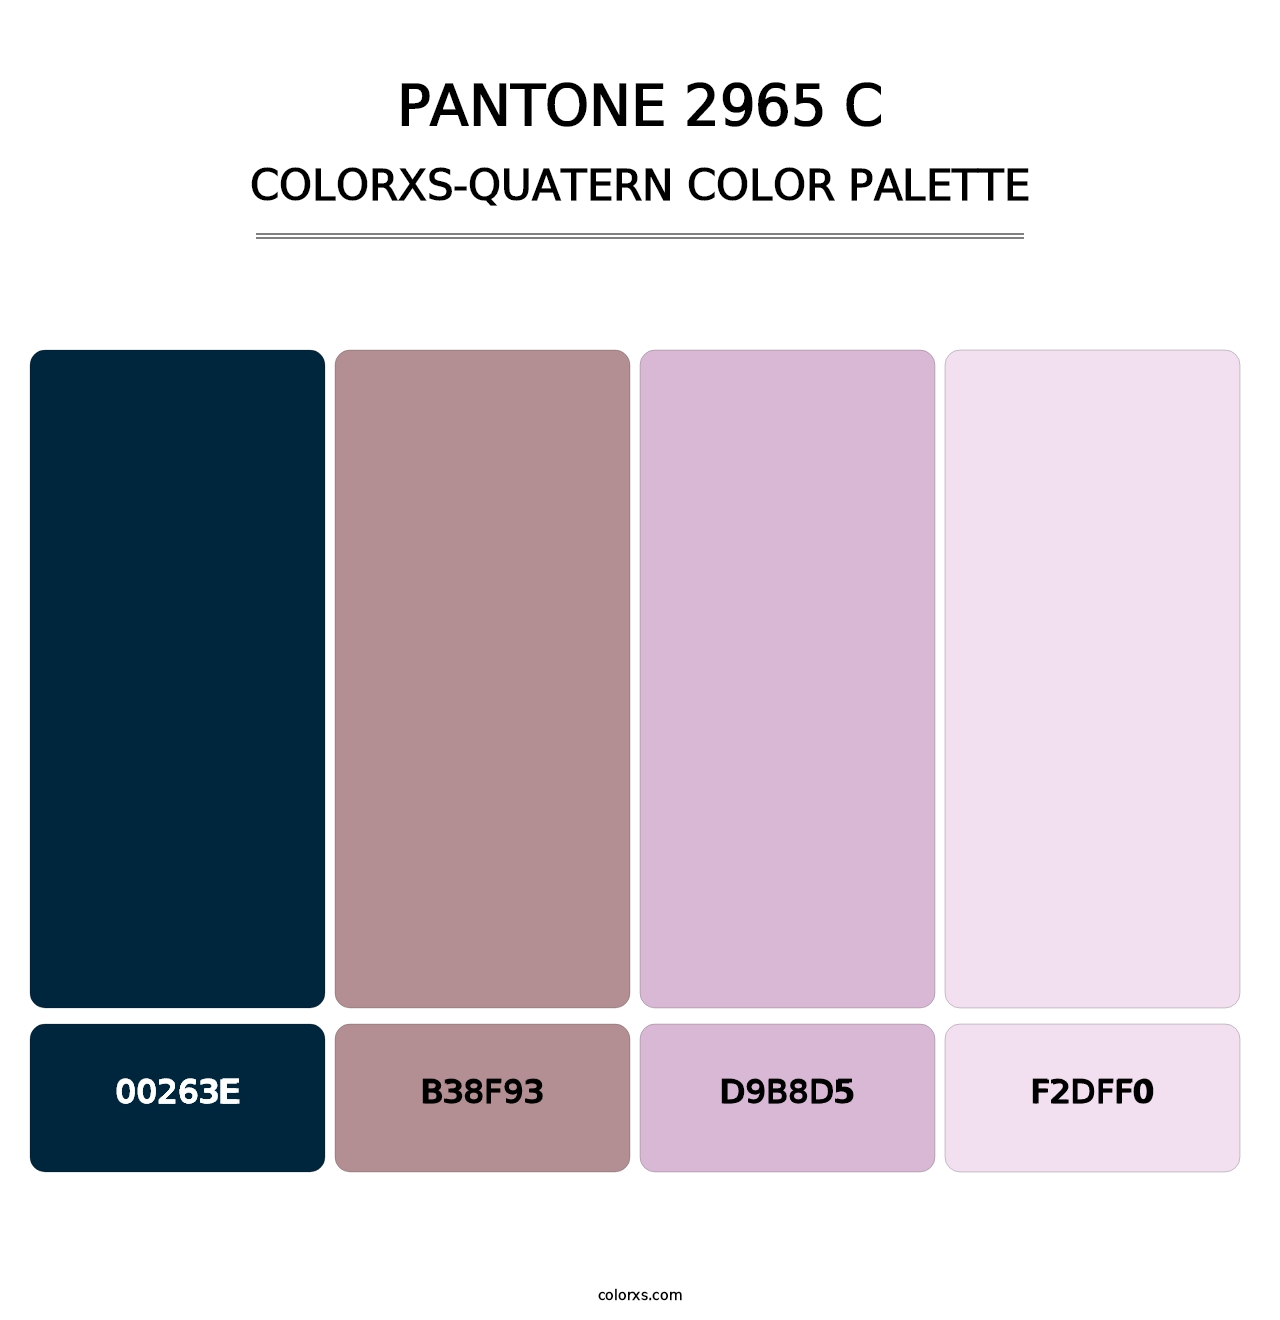 PANTONE 2965 C - Colorxs Quatern Palette